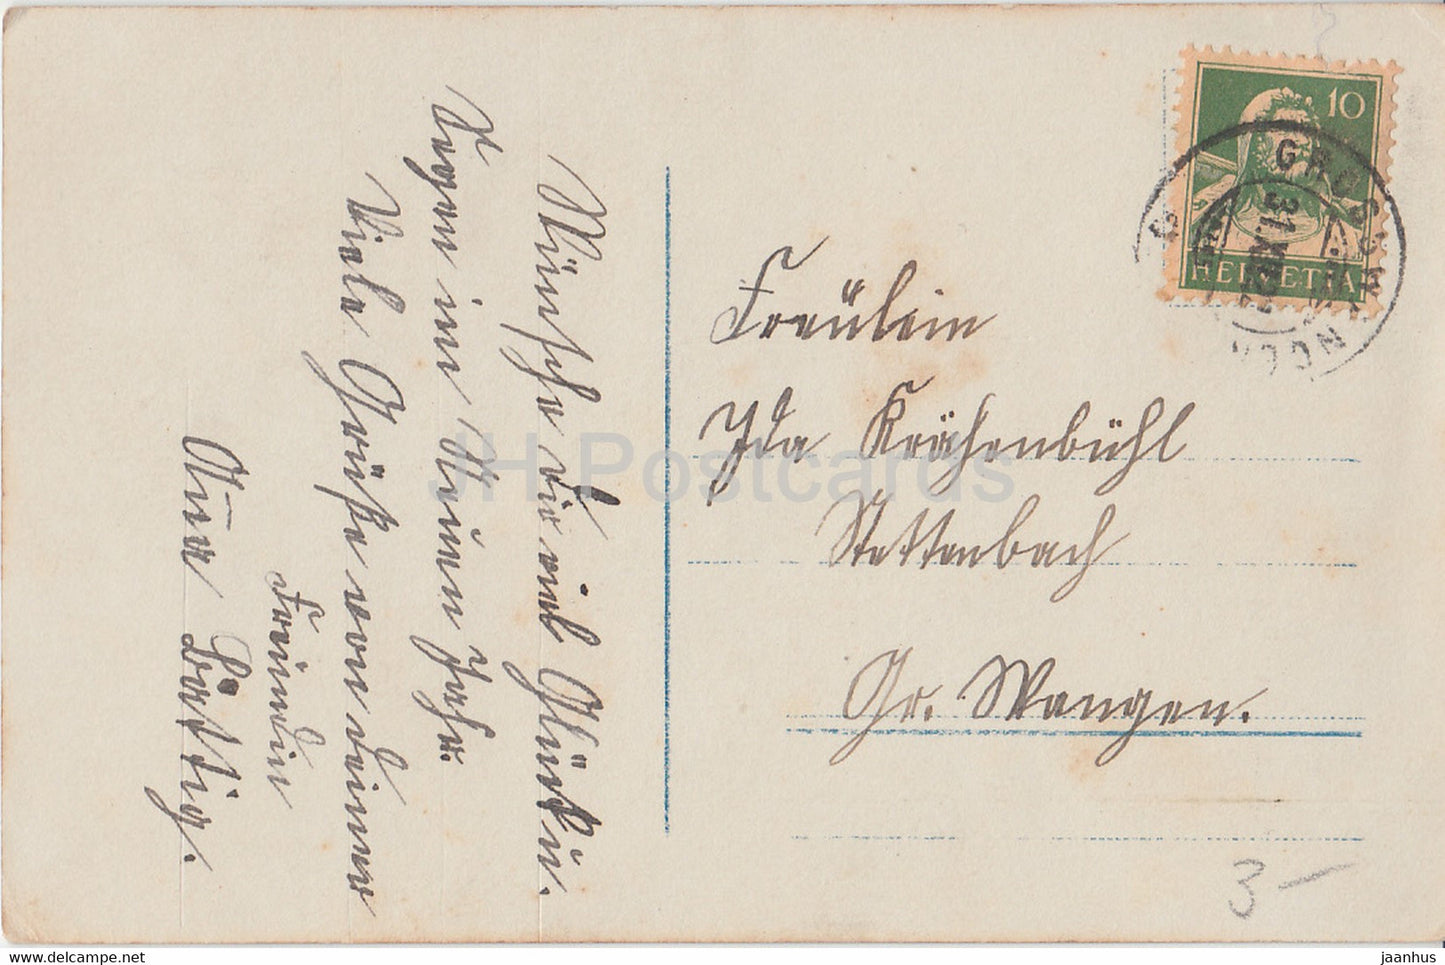 New Year Greeting Card - Zum neuen Jahre viel Gluck - chldren - old postcard - 1922 - Germany - used